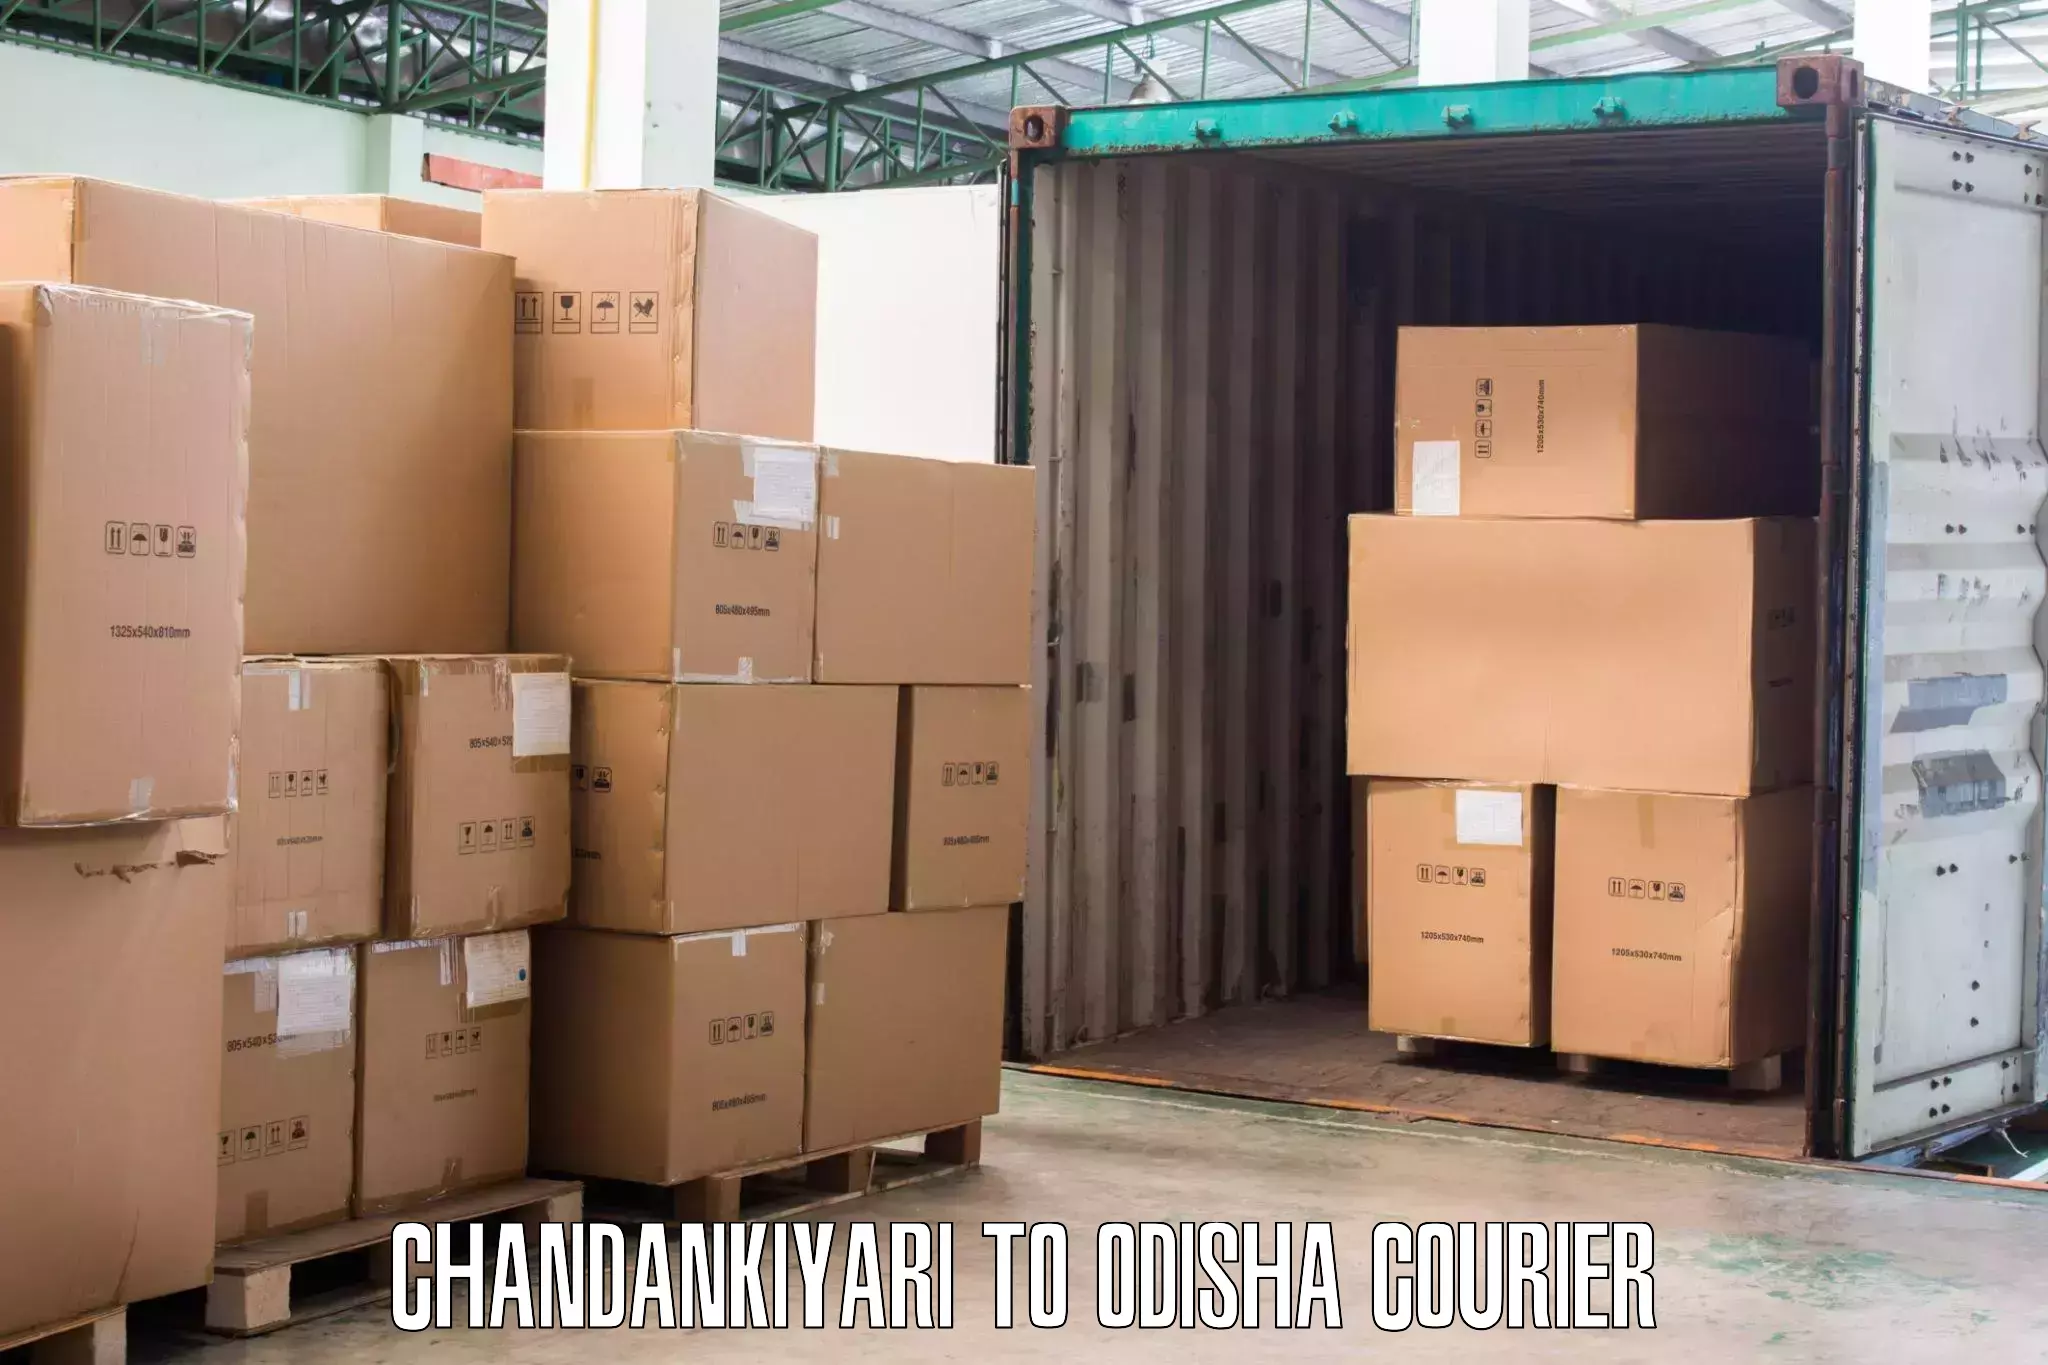 Home furniture moving in Chandankiyari to Raruan